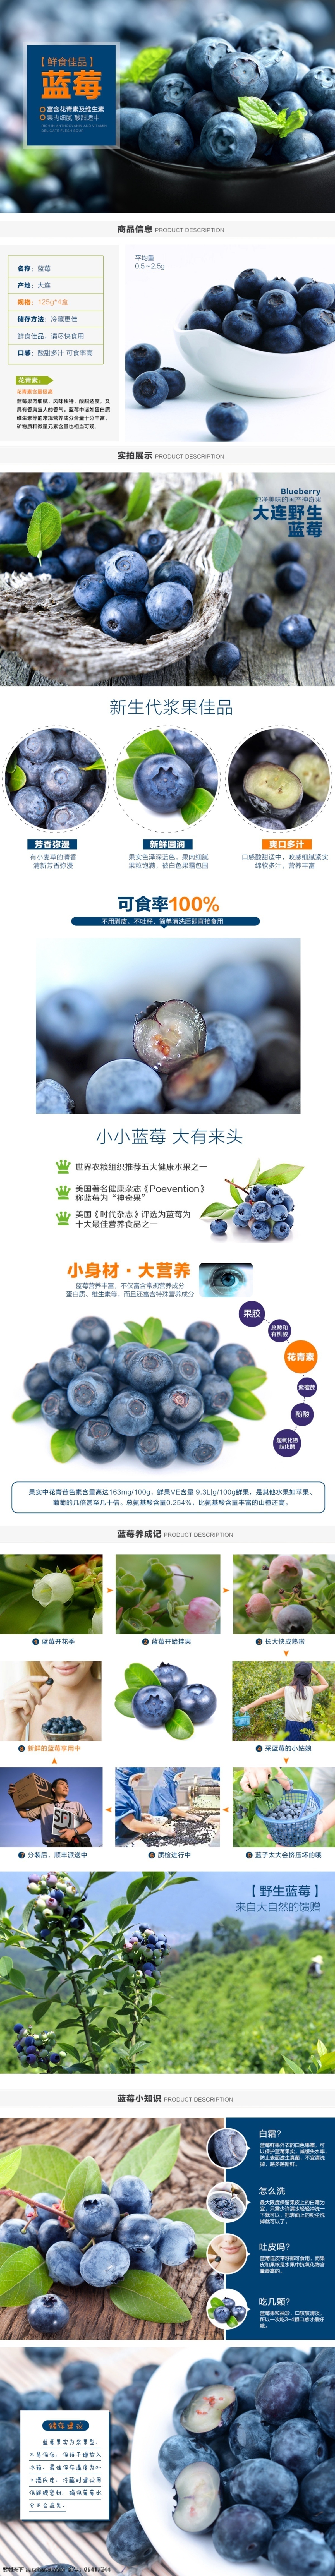 水果 蓝莓 详情 页 淘宝素材 淘宝设计 淘宝模板下载 白色